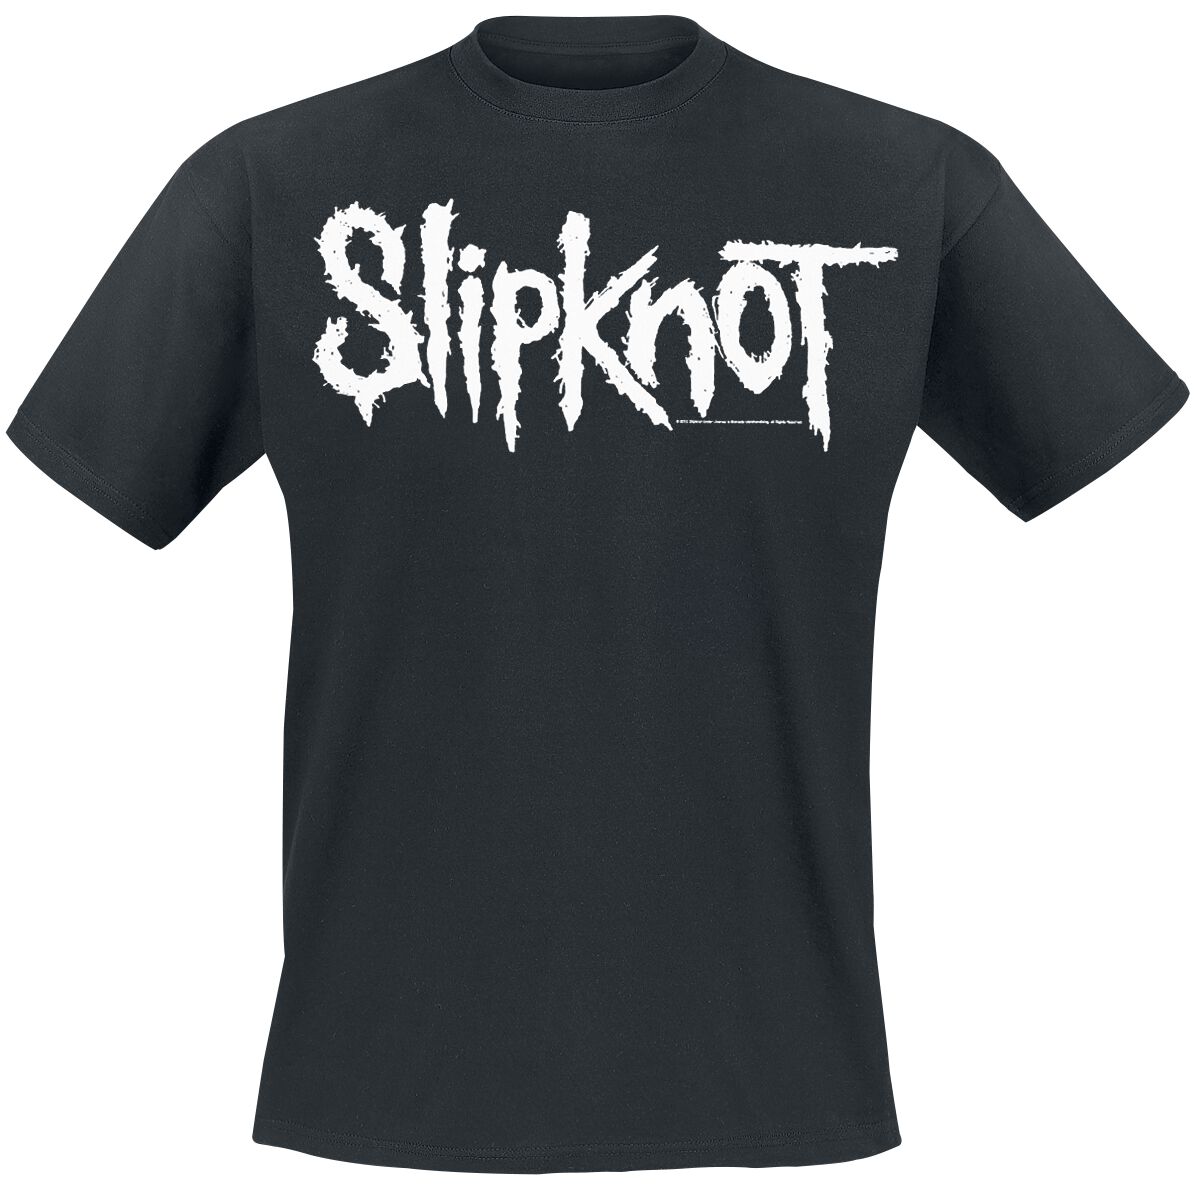 Slipknot T-Shirt - White Logo - S bis 5XL - für Männer - Größe XXL - schwarz  - EMP exklusives Merchandise!